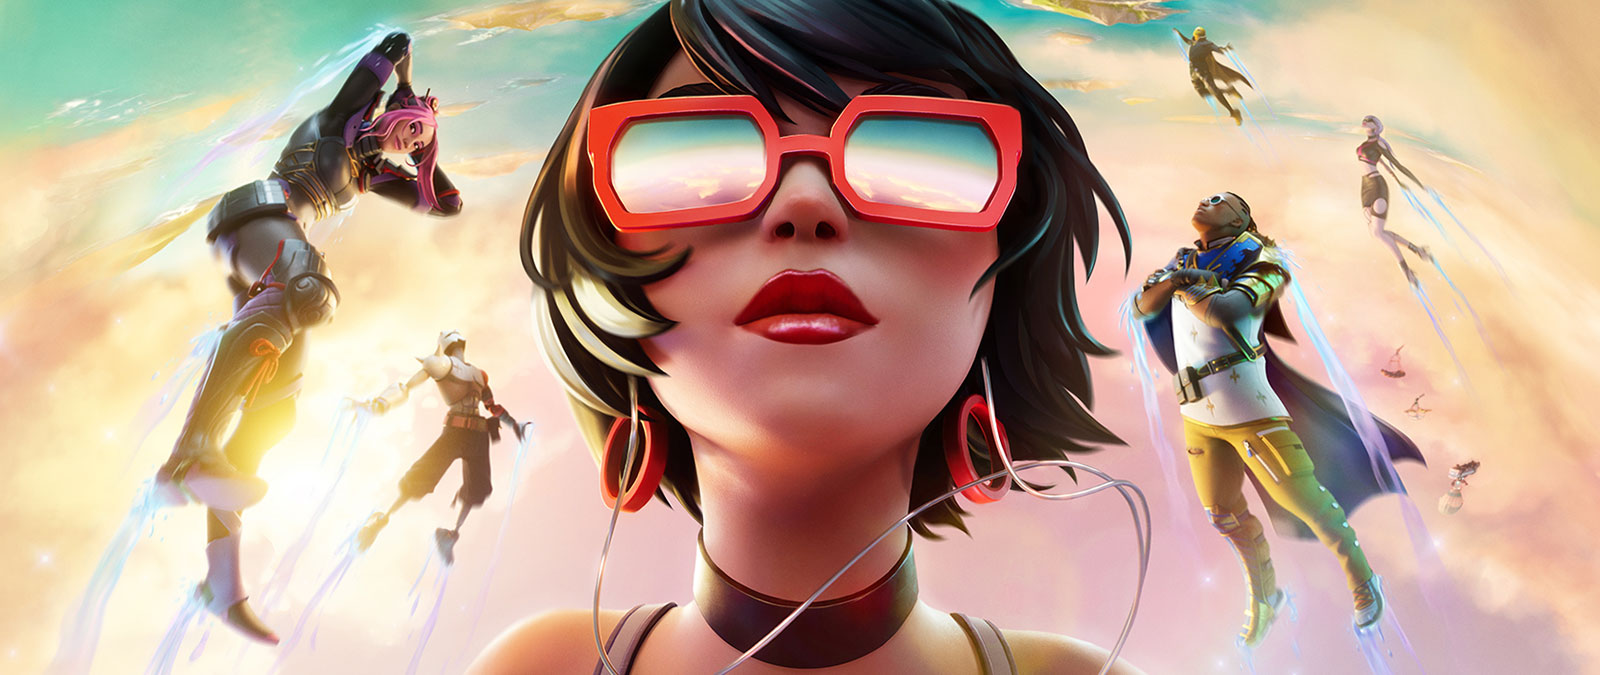 Ein Mädchen mit roter Sonnenbrille schwebt mit anderen Figuren in den Wolken vor einem pastellfarbenen Himmel.